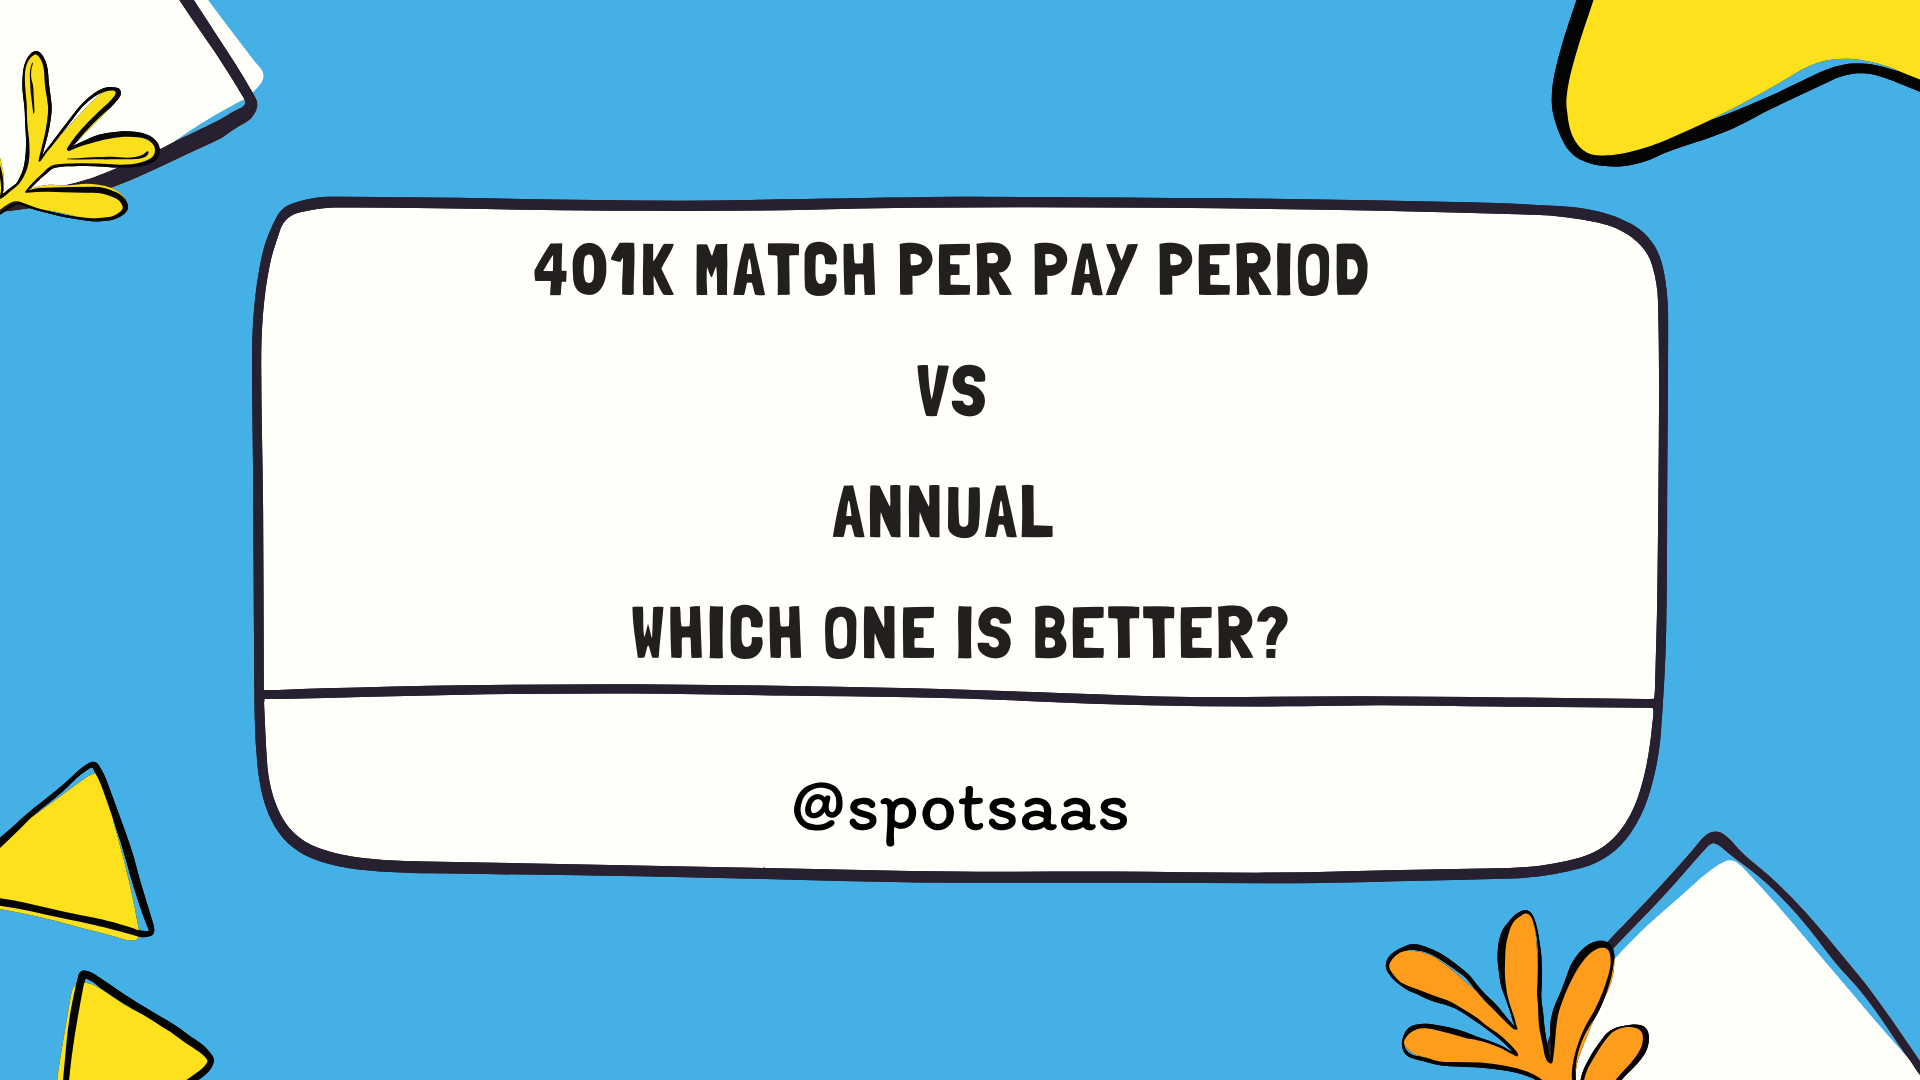 401k Match Per Pay Period vs Annual